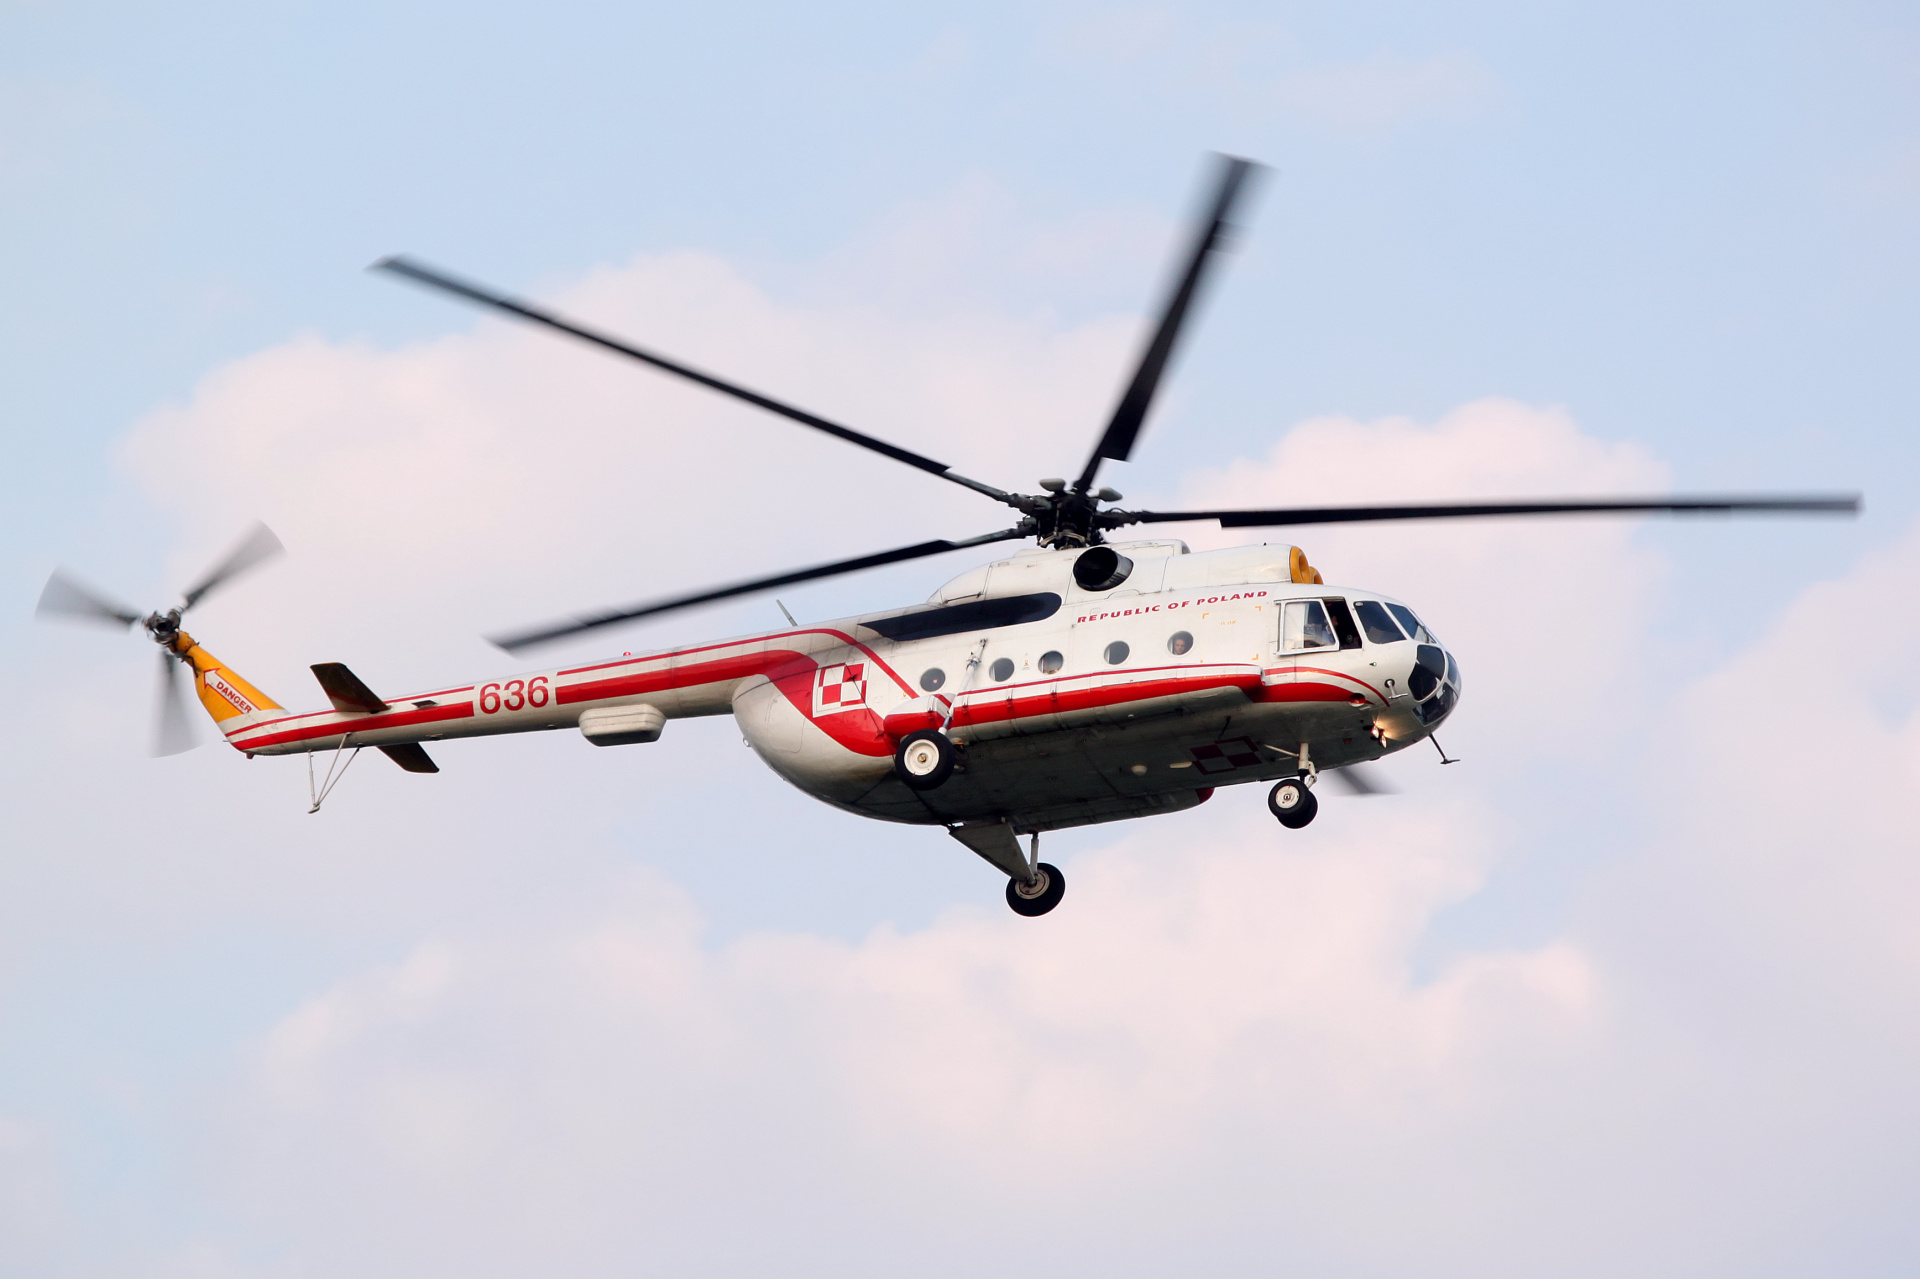 Mi-8T, 636, Polish Air Force (Aircraft » EPWA Spotting » Mil Mi-8)